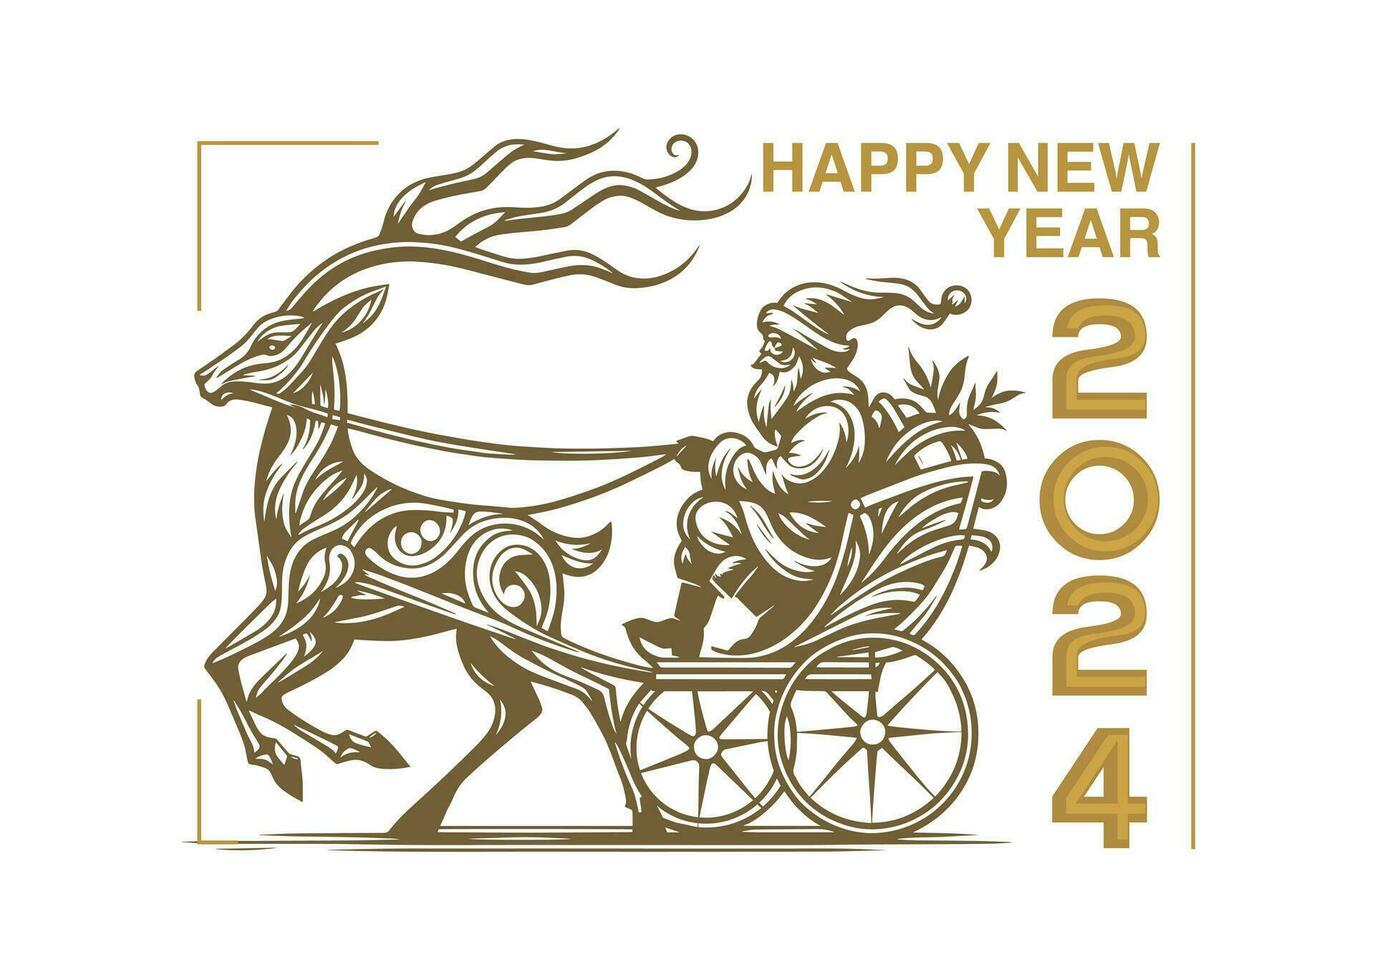 contento nuovo anno 2014 design con Santa Claus equitazione un' cavallo disegnato carrozza d'oro semplice lussuoso vettore saluto carta illustrazione design Natale celebrazione